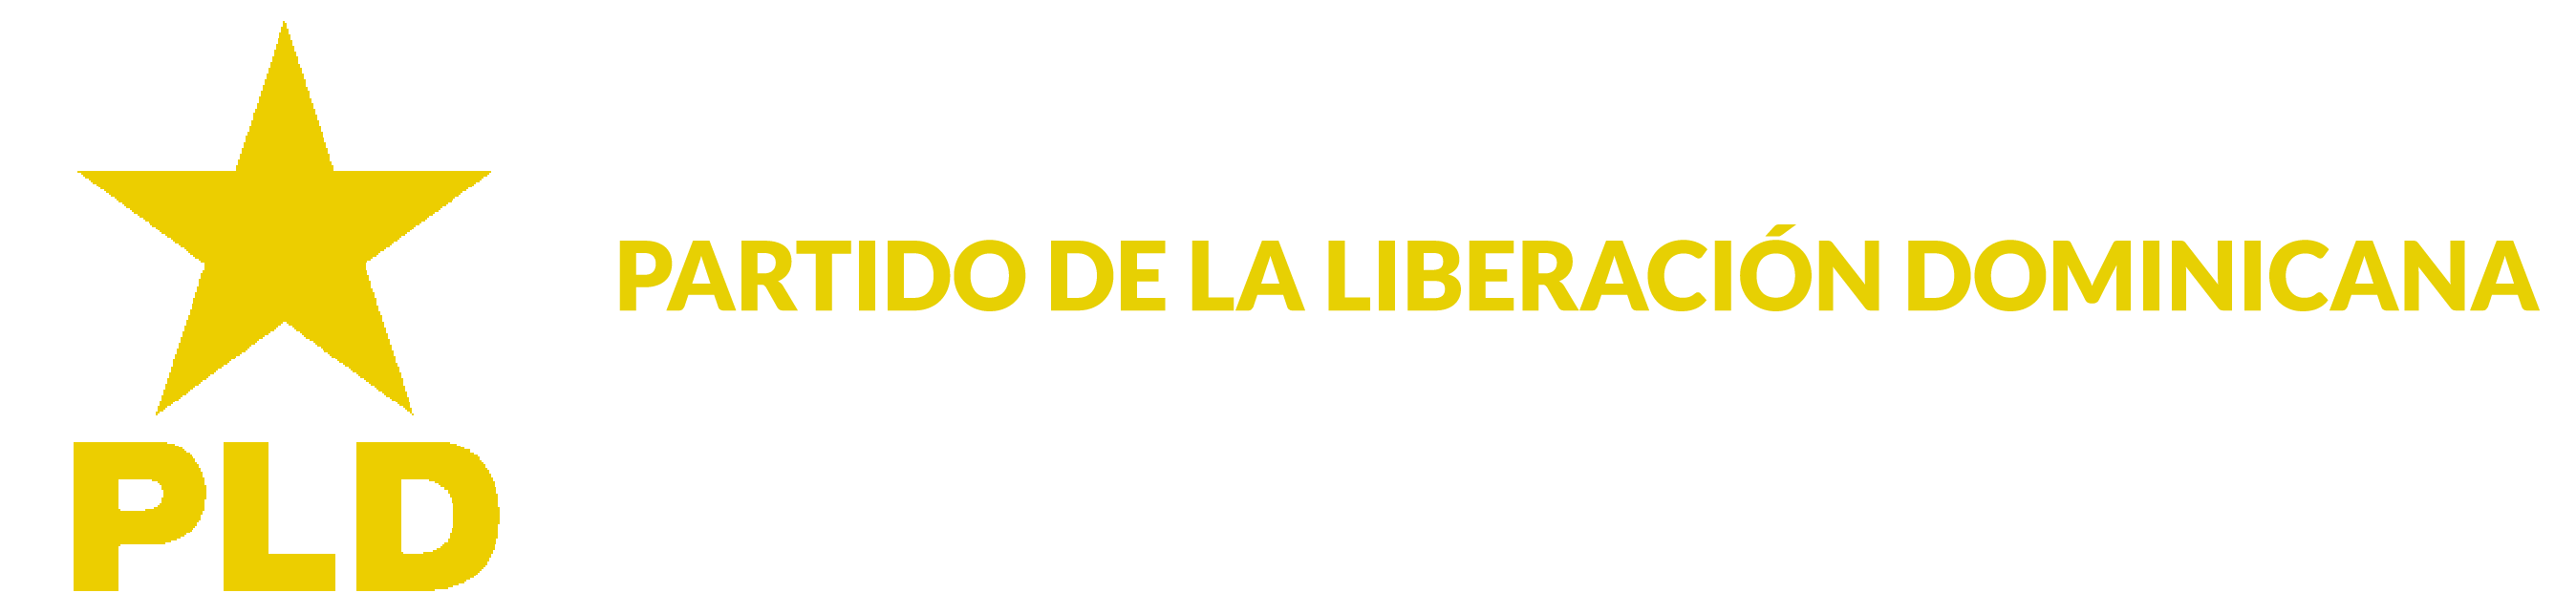 Partido de la liberación dominicana logo